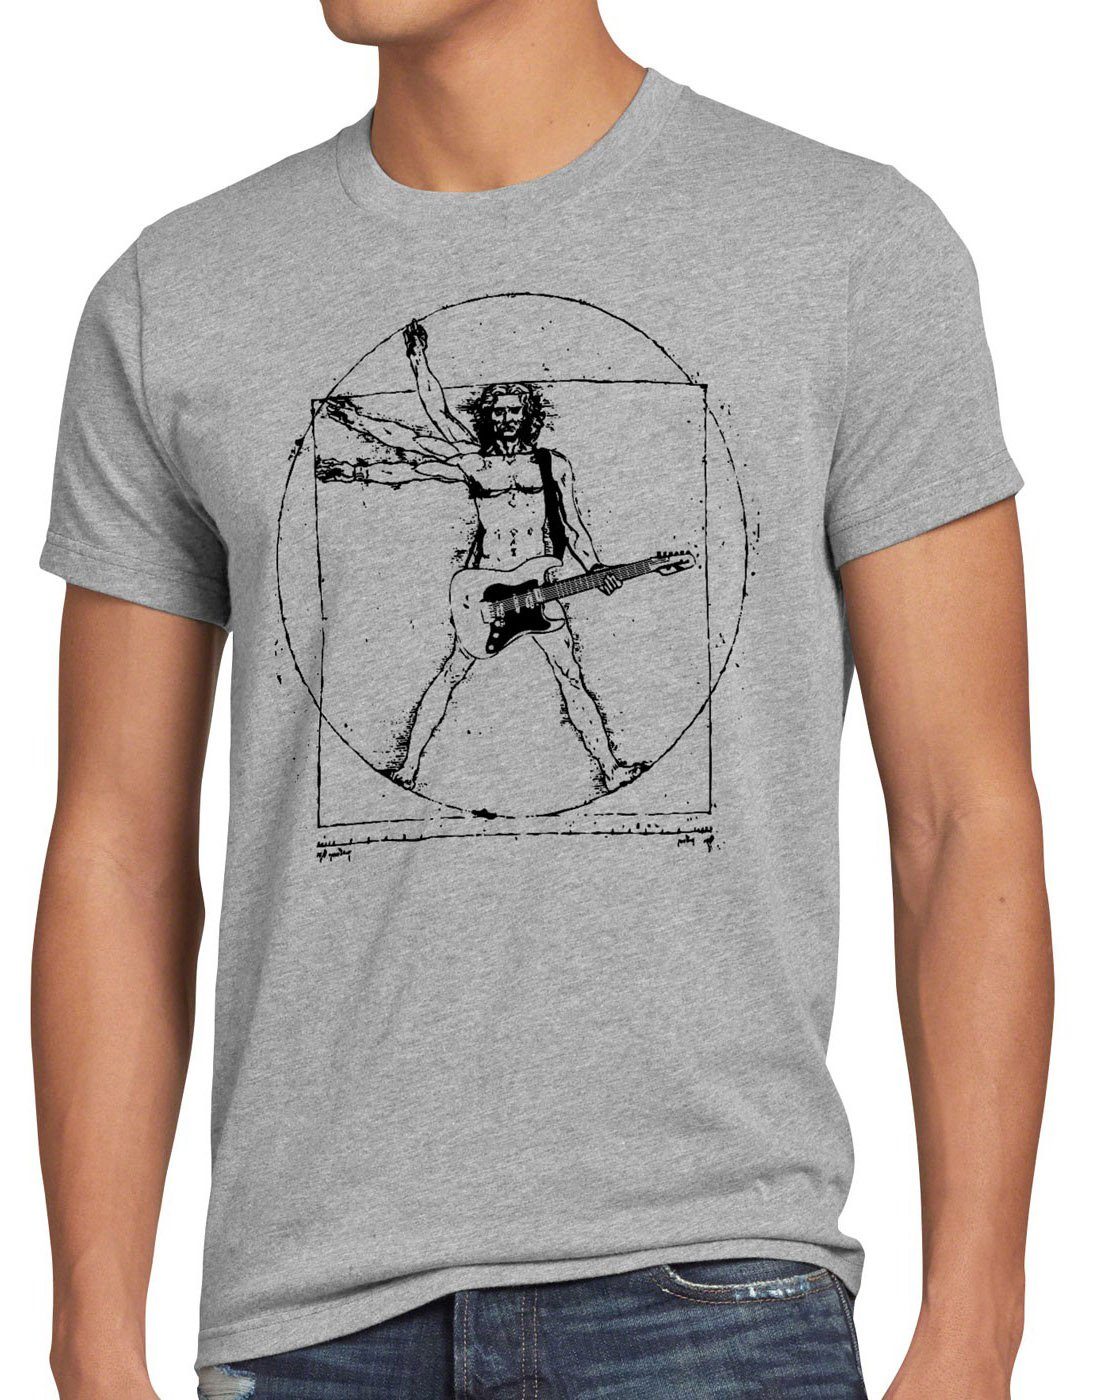 style3 Print-Shirt Herren T-Shirt Da Vinci Rock T-Shirt musik festival gitarre vinyl metal open air wacken mensch